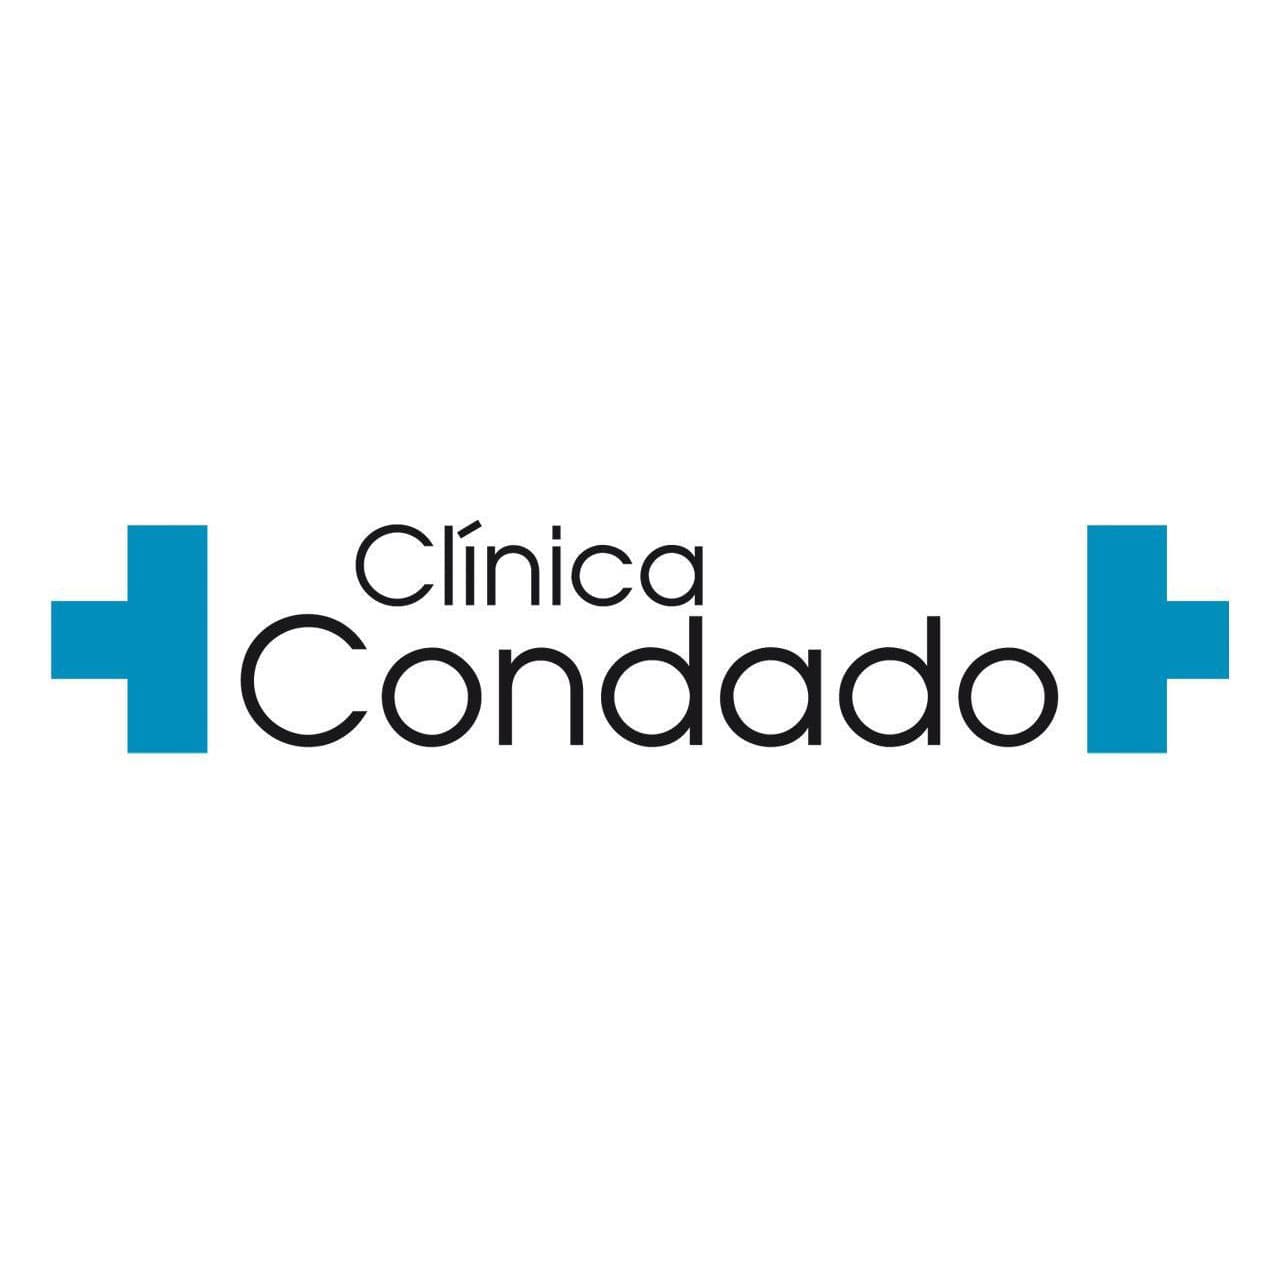 (c) Clinicacondado.com